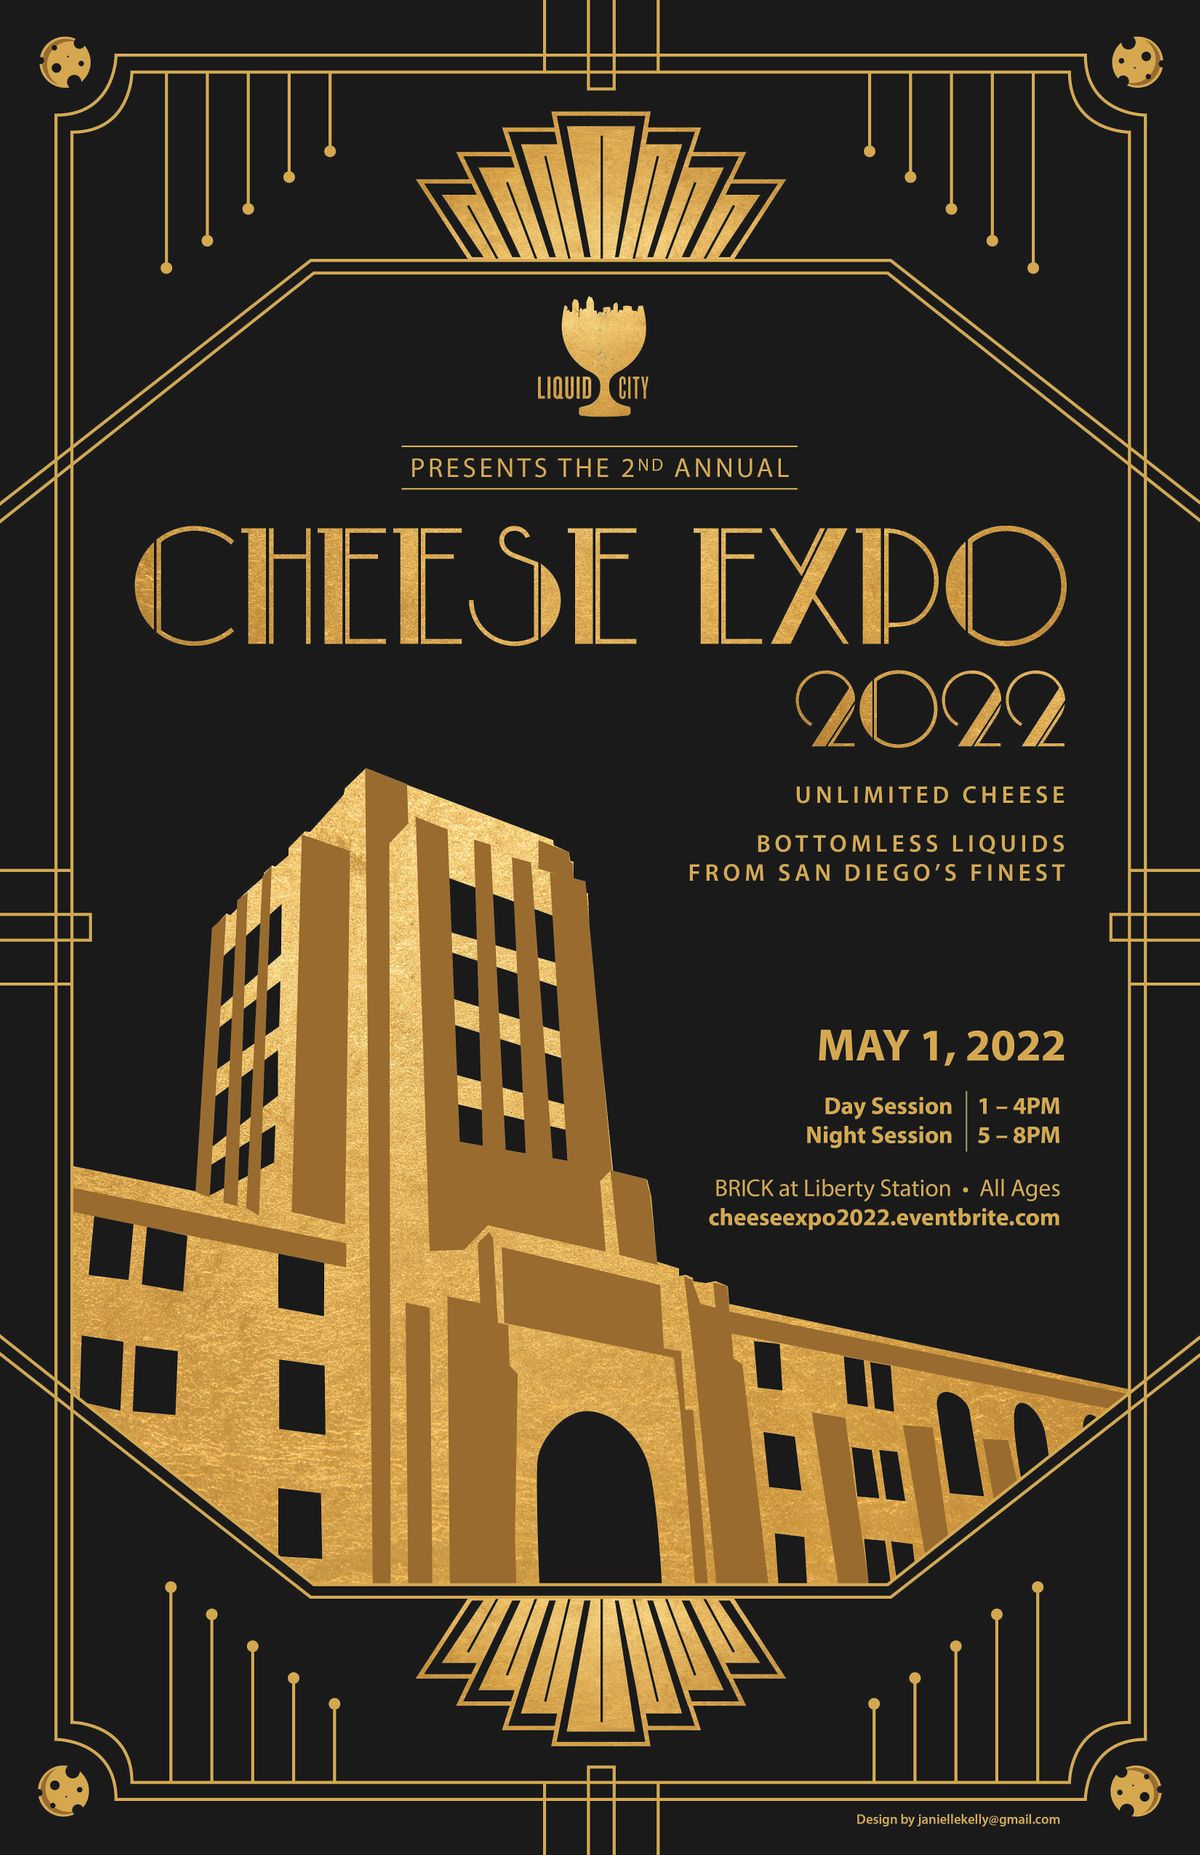 LIQUID CITY: Cheese Expo 2022